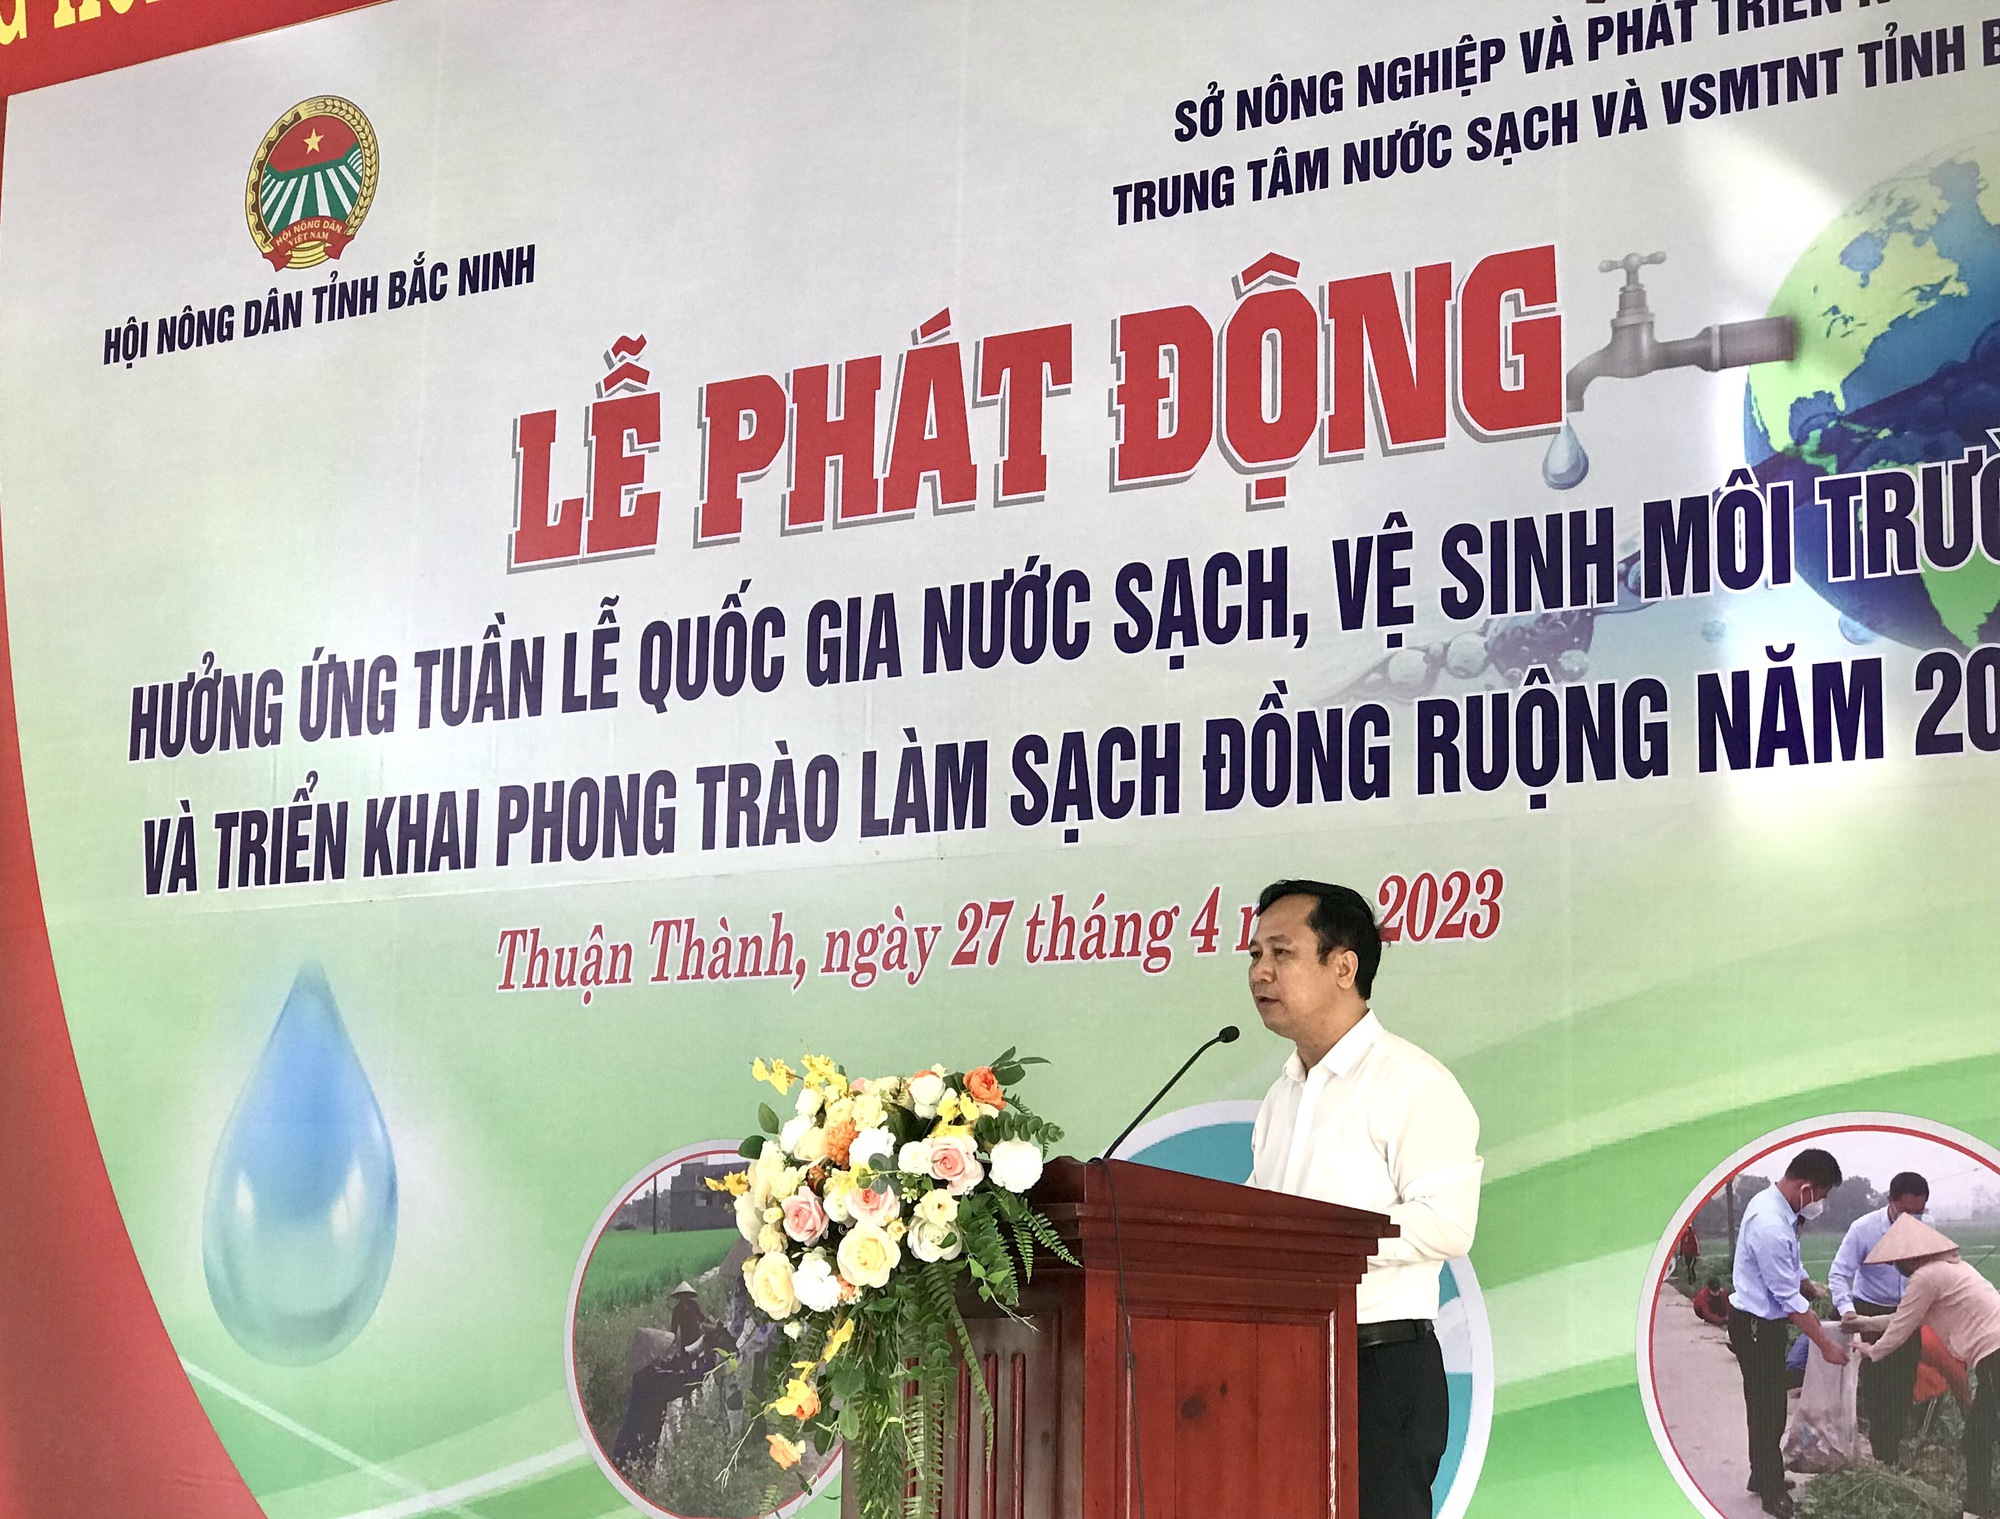  Nông dân Bắc Ninh ra quân hưởng ứng tuần lễ nước sạch VSMT, phát động phong trào “Làm sạch đồng ruộng”   - Ảnh 1.